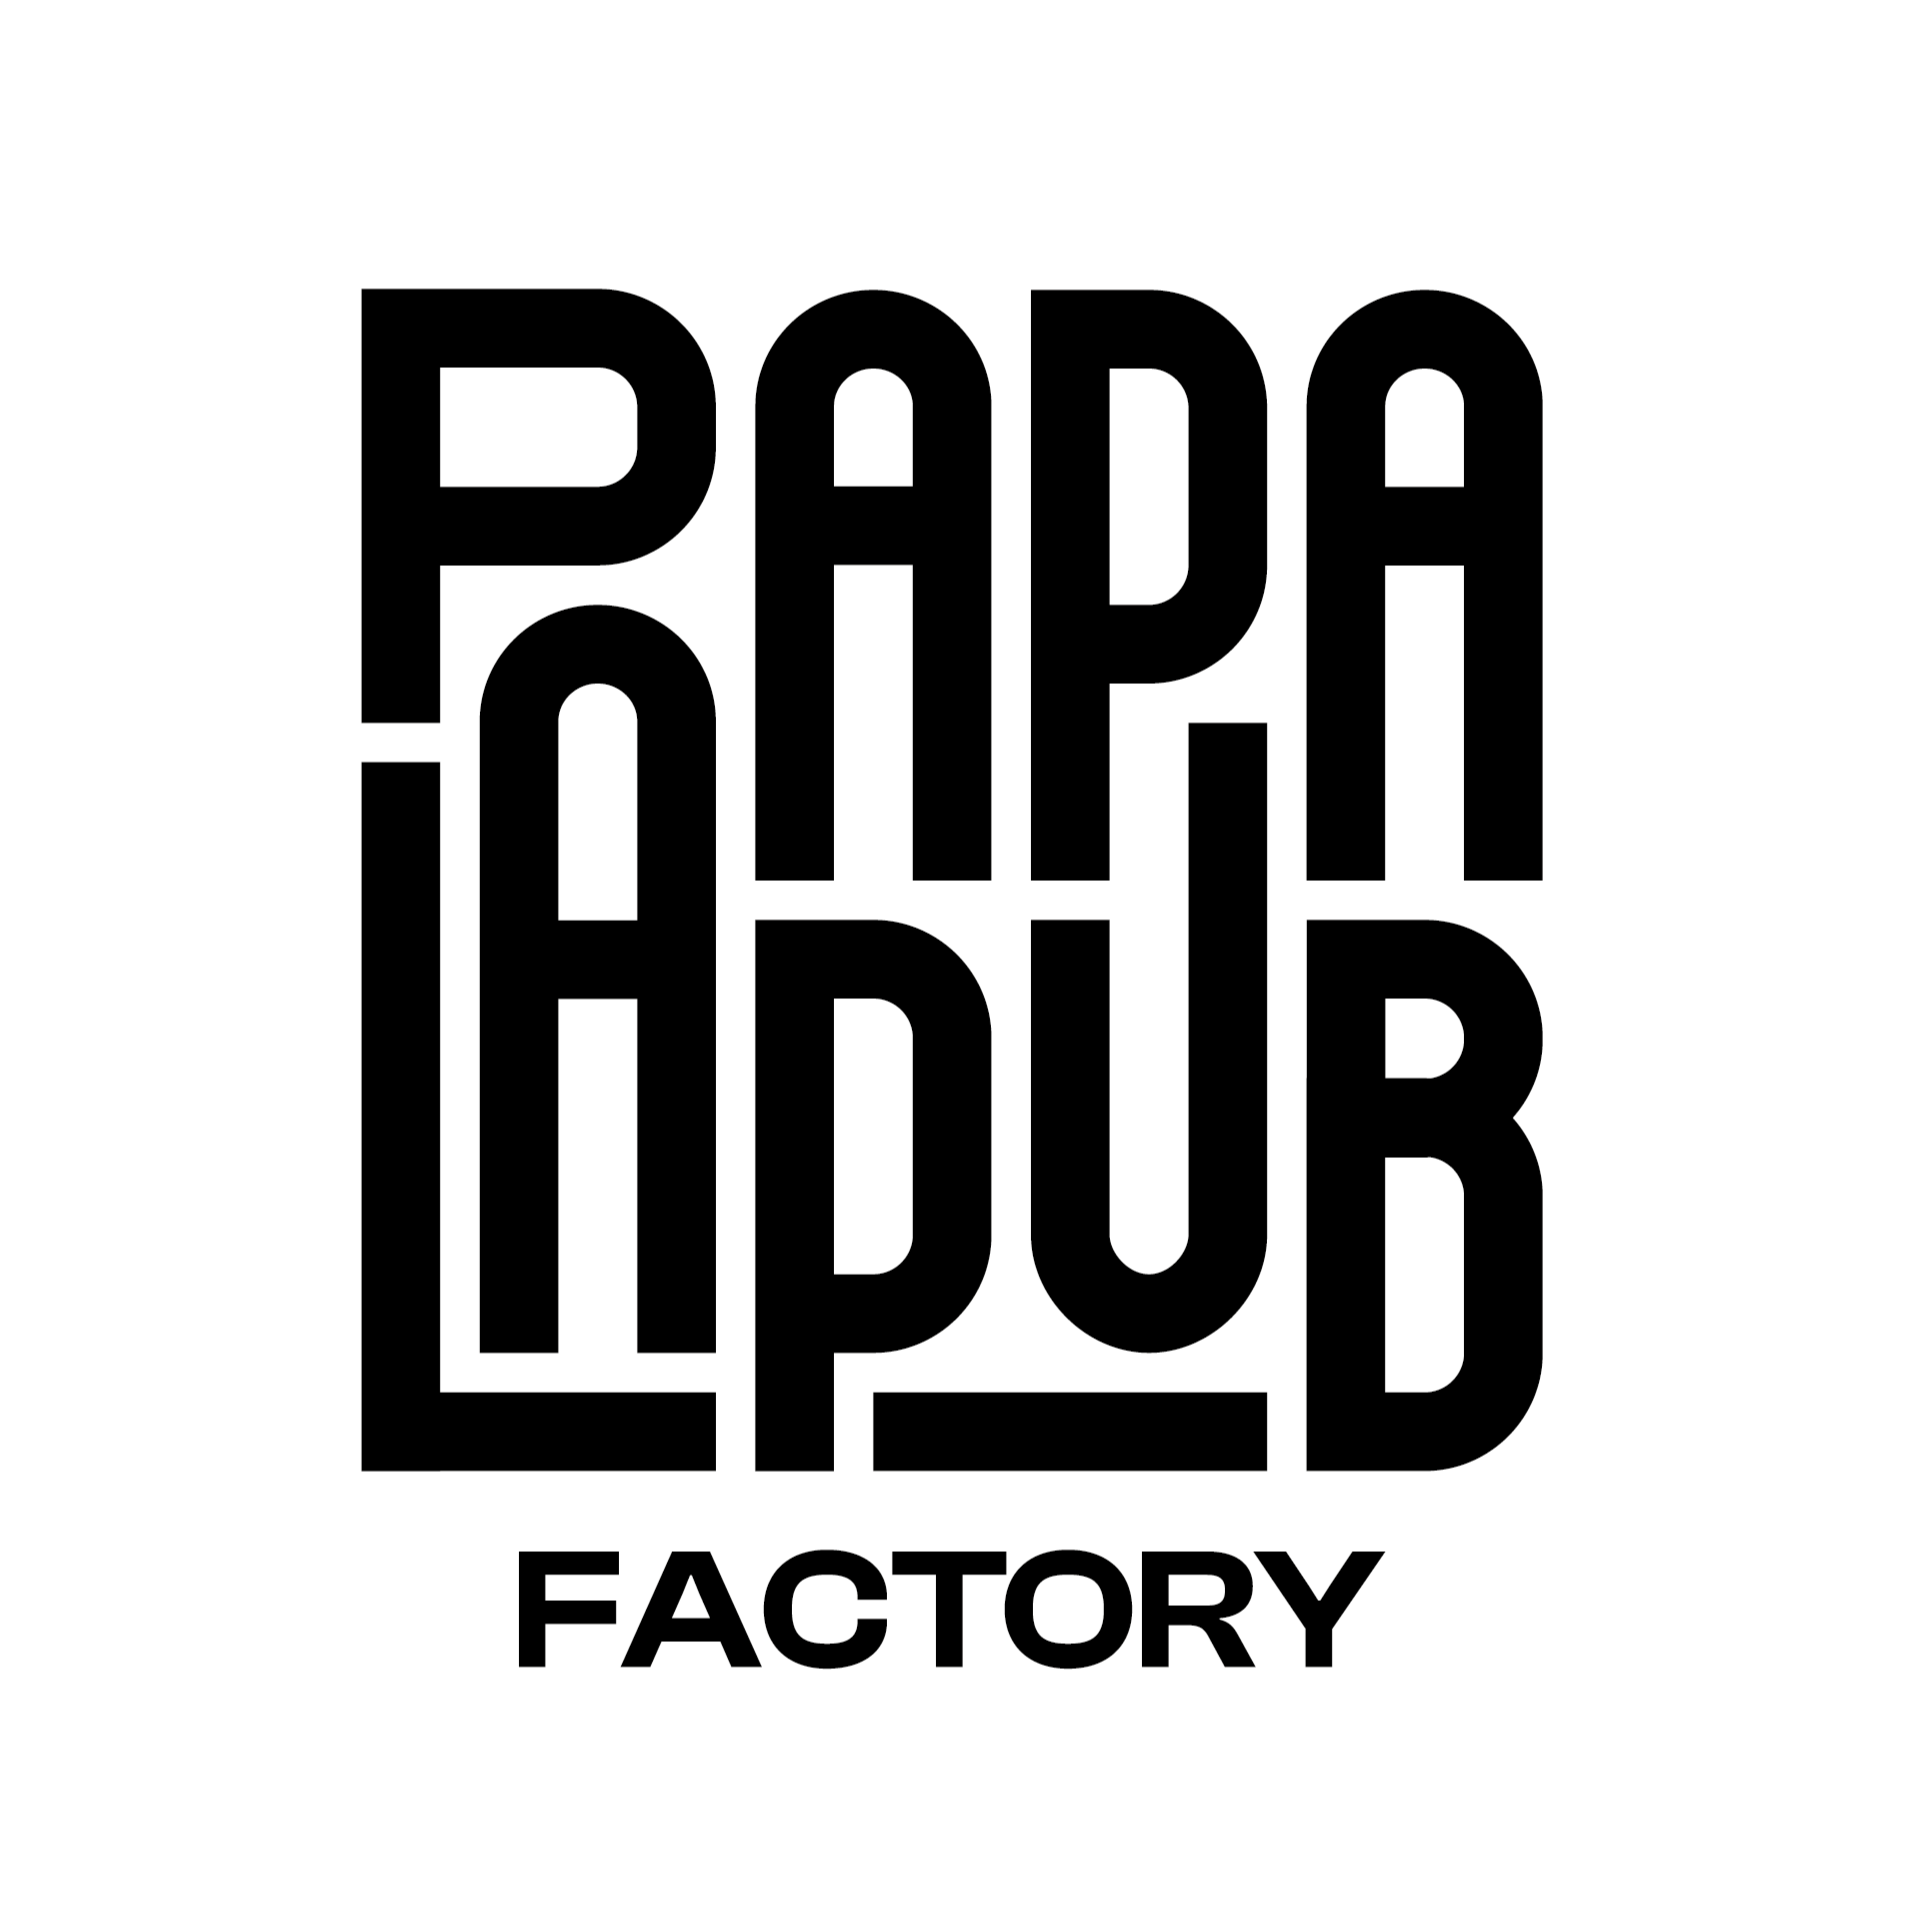 Kundenfoto 1 PAPALAPUB Factory